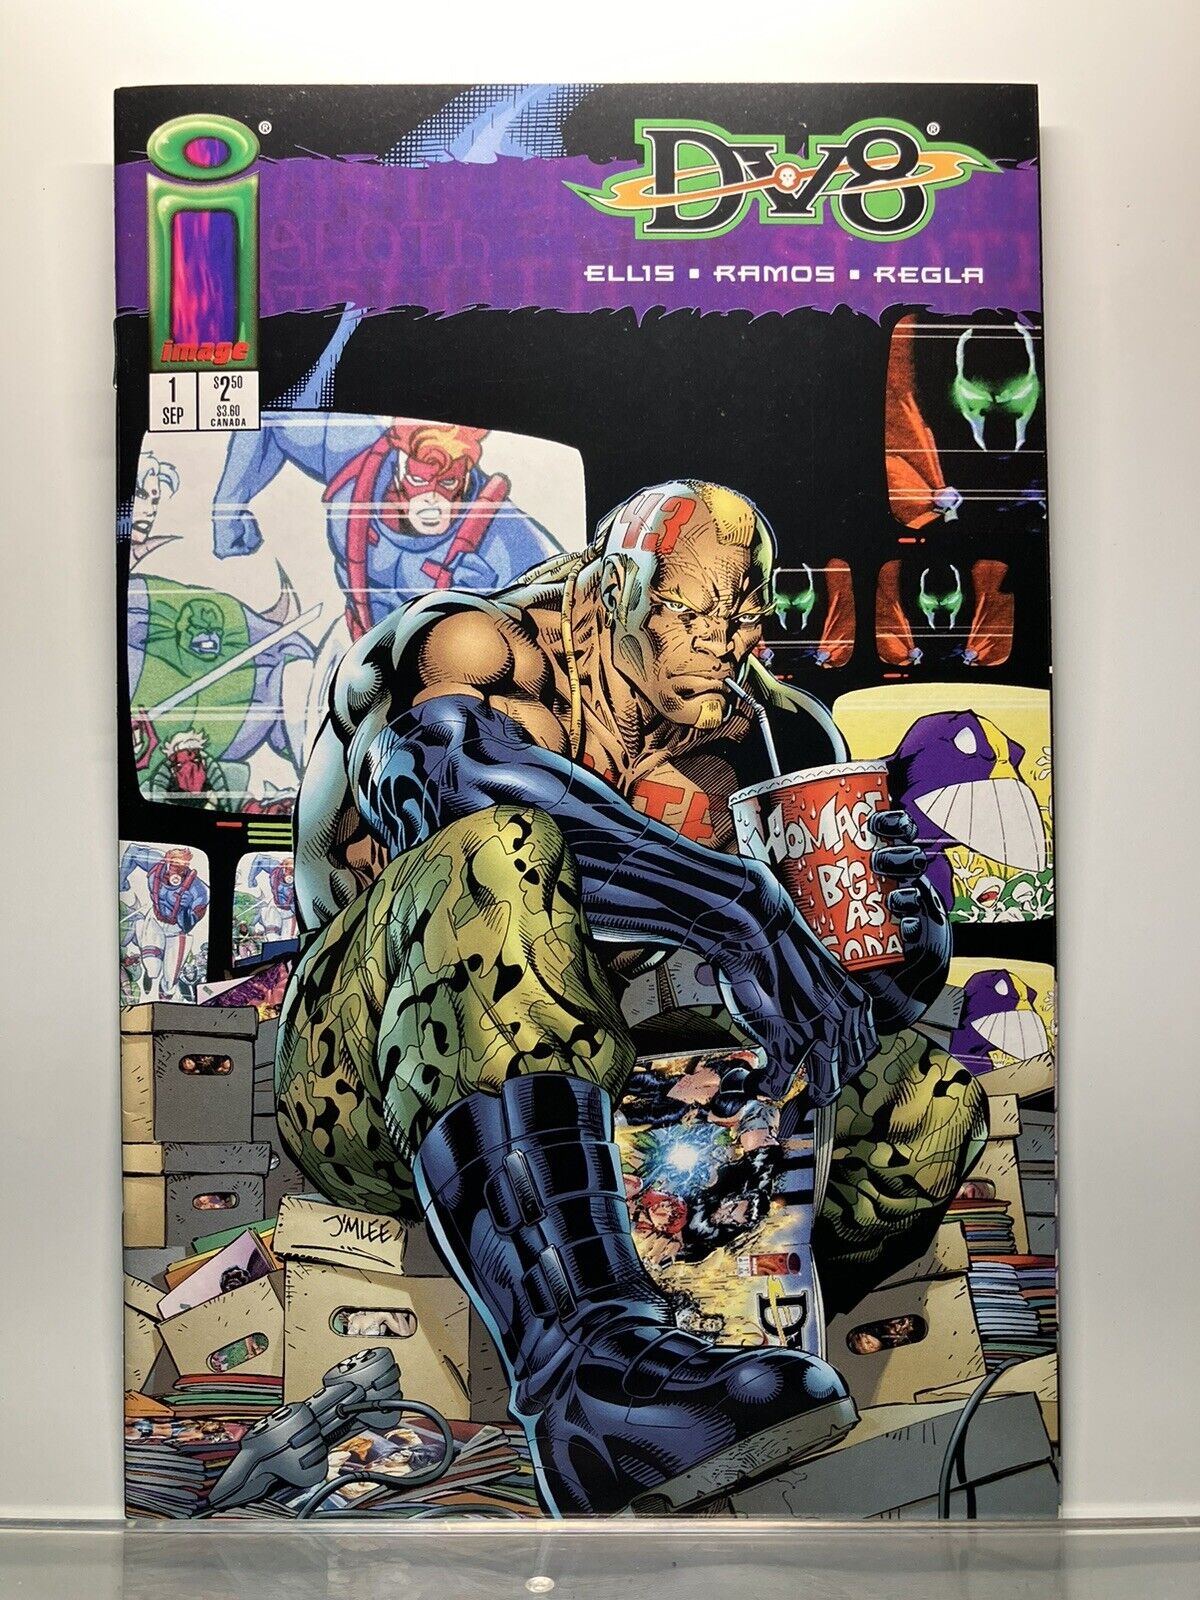 DV8 #1 (1996) IMAGE COMICS - JIM LEE COVER - HUMBERTO RAMOS ART - NM